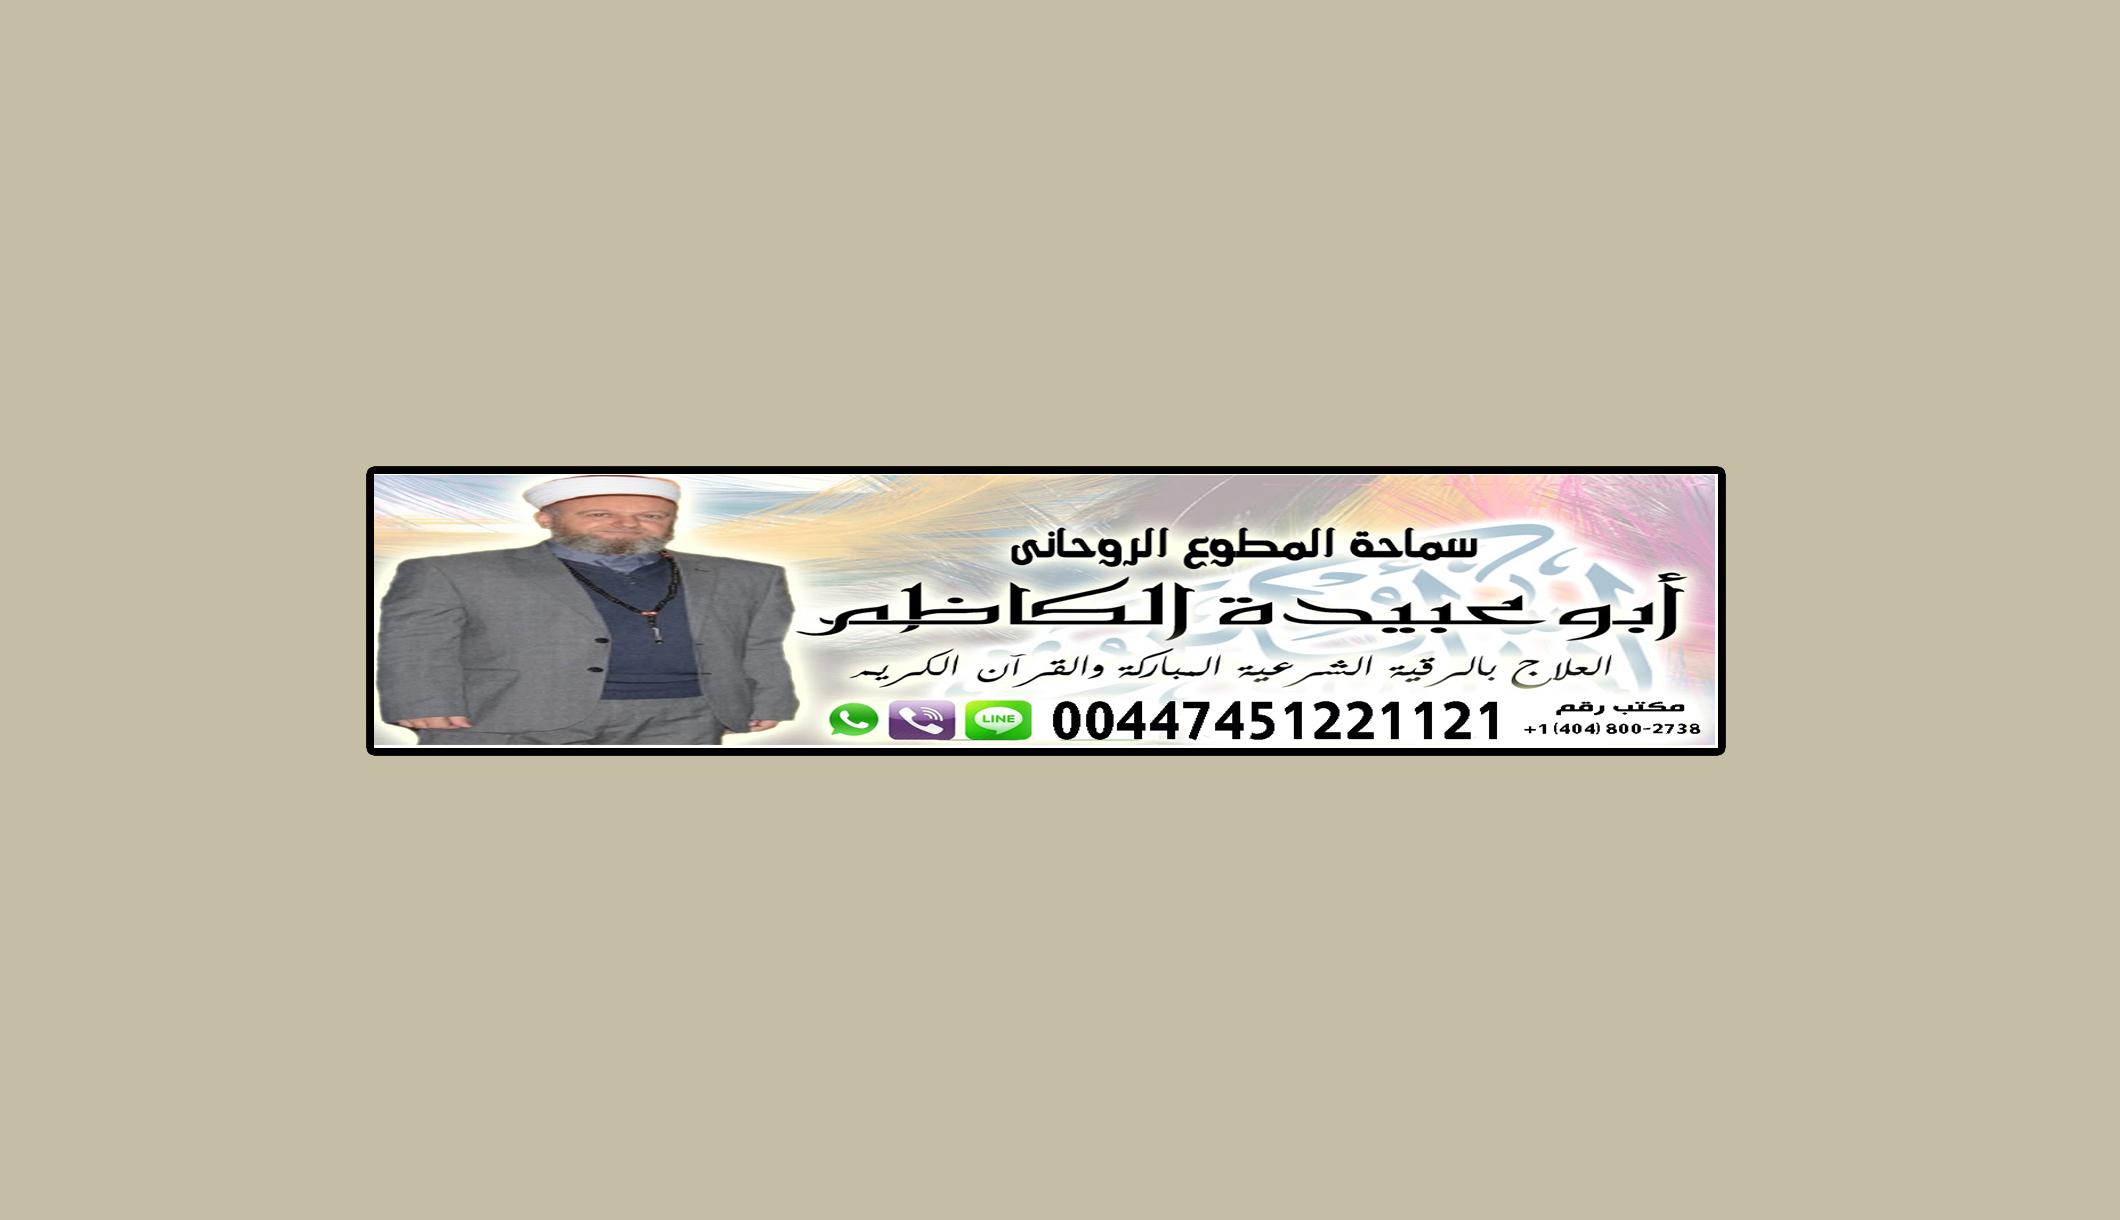 الكشف والعلاج مجانا لوجة الله | الشيخ الروحاني/ أبو عبيدة الكاظم | 00447451221121 353667373